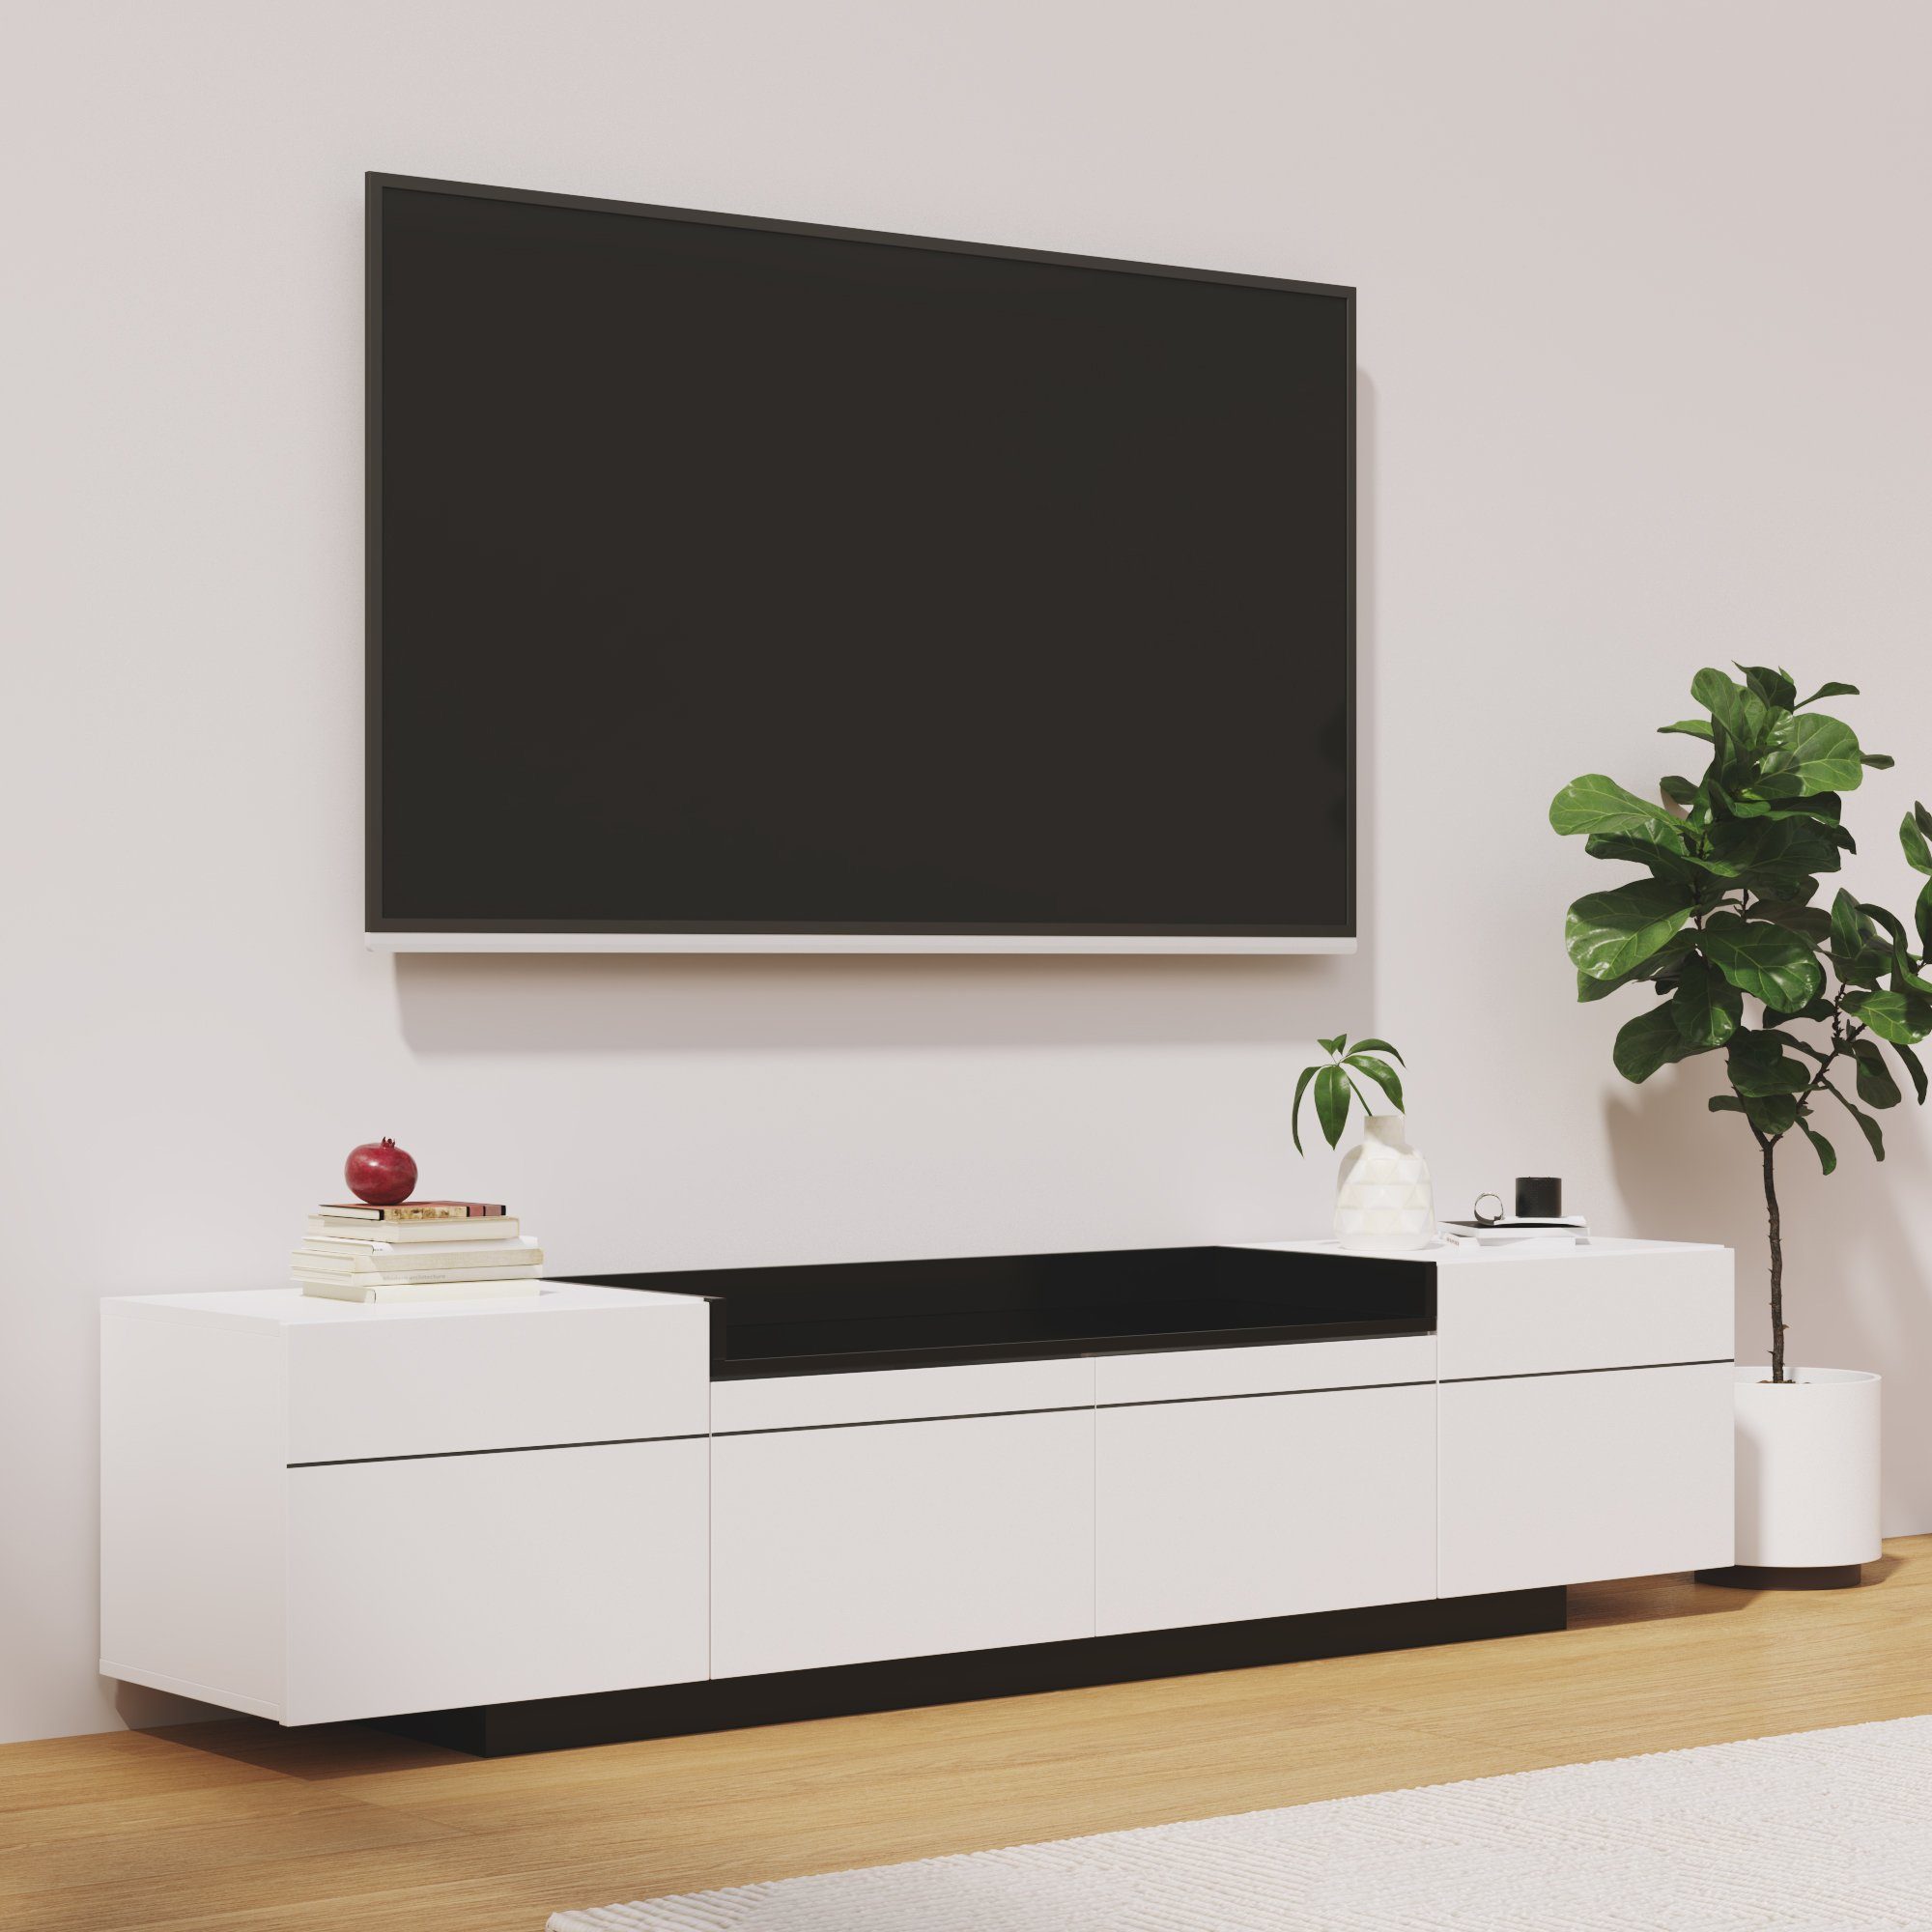 Odikalo TV-Schrank Sideboard Lowboard 3 Türen Stauraum Hochglanz Colorblock-Design Weiß